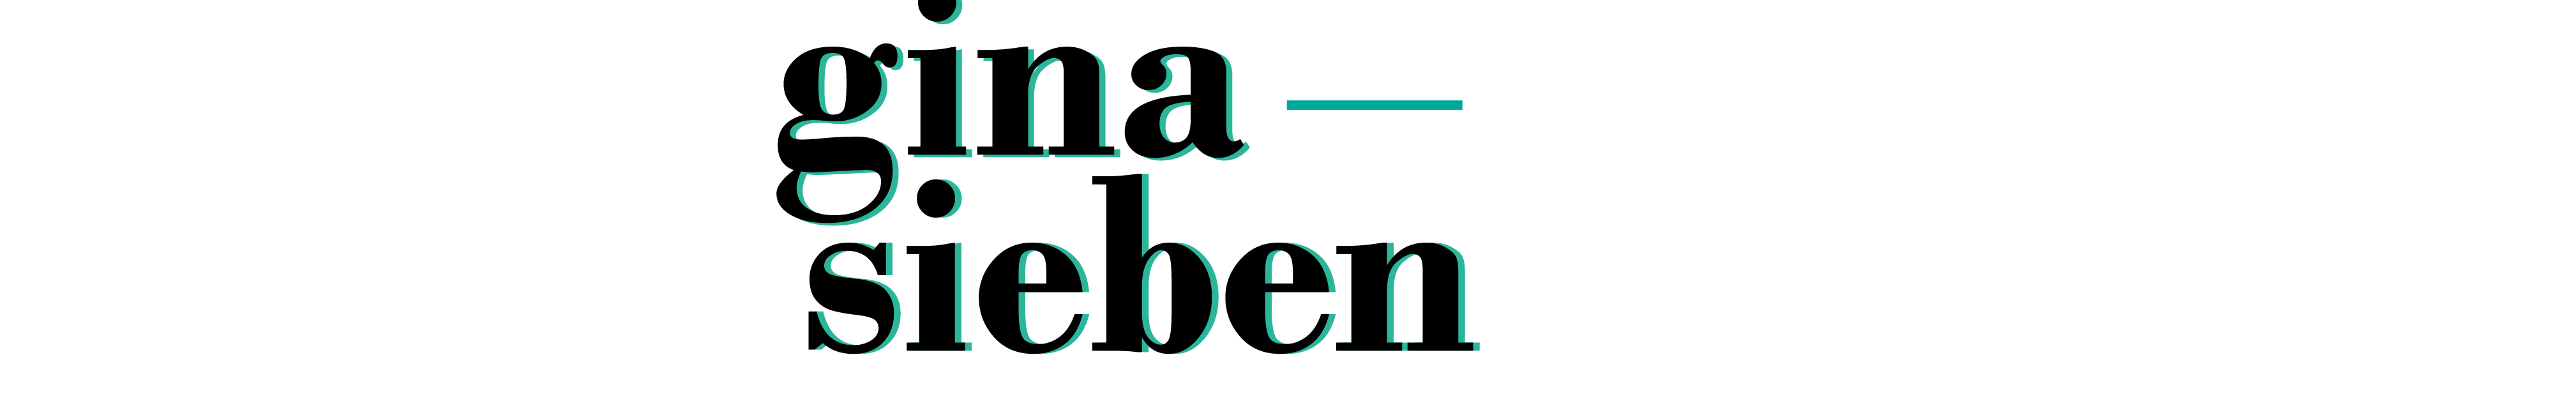 Gina Sieben のプロファイルバナー